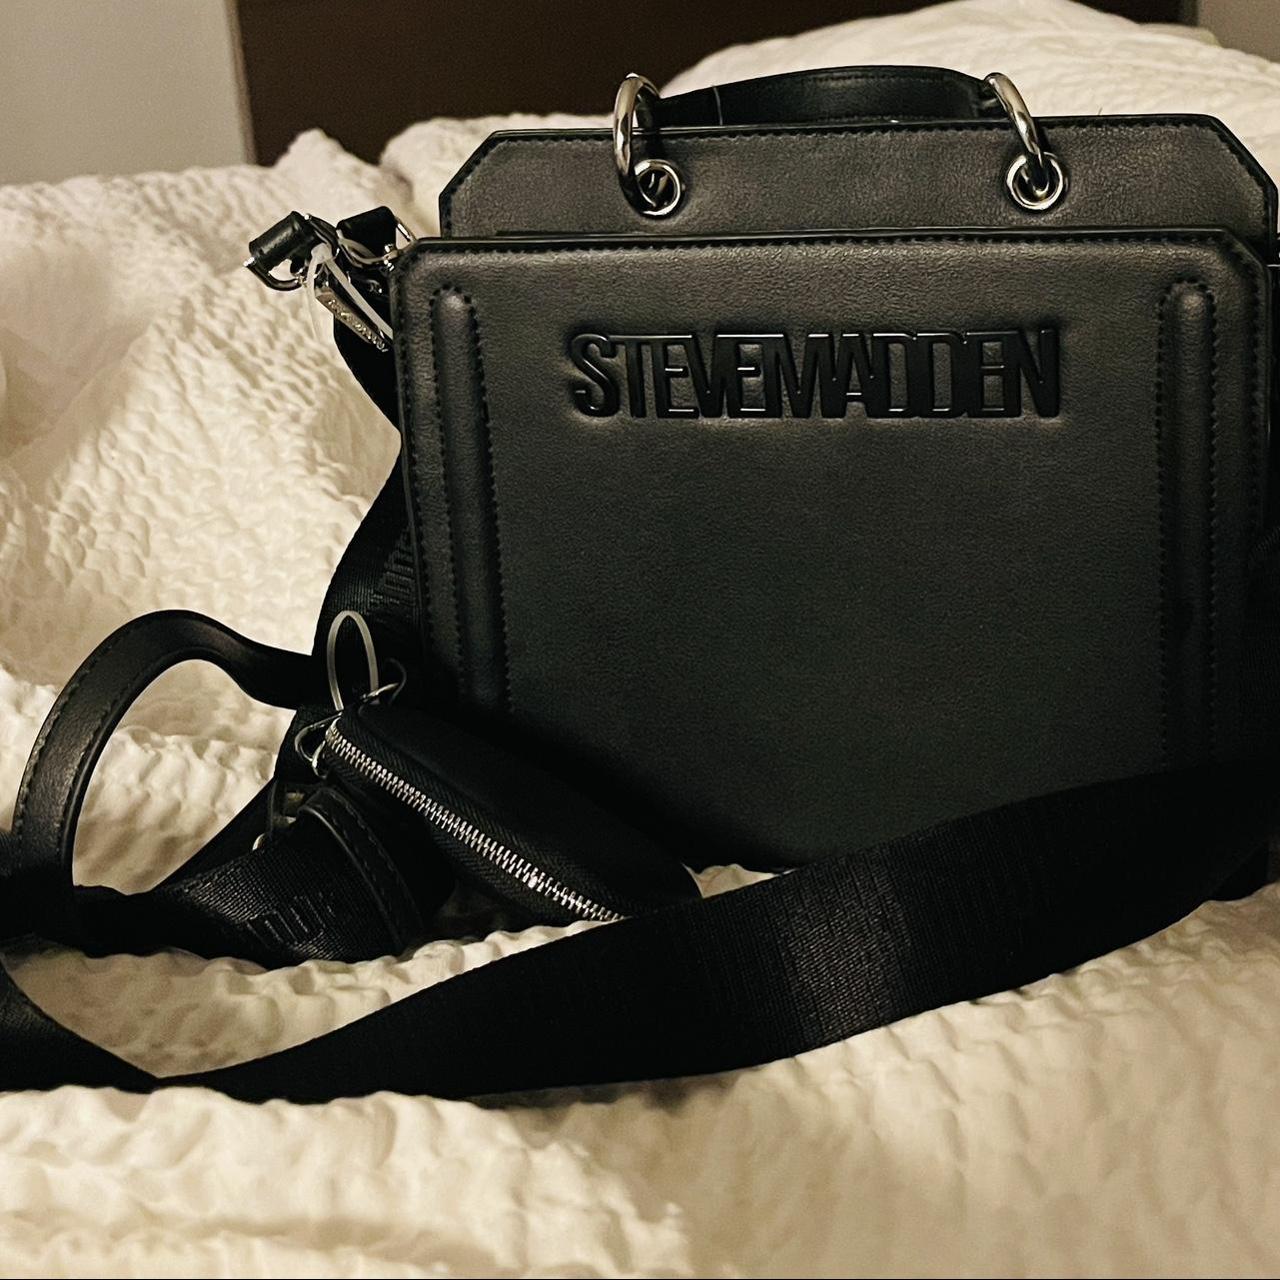 Black Steve Madden duffle bag. Brand new never worn - Depop